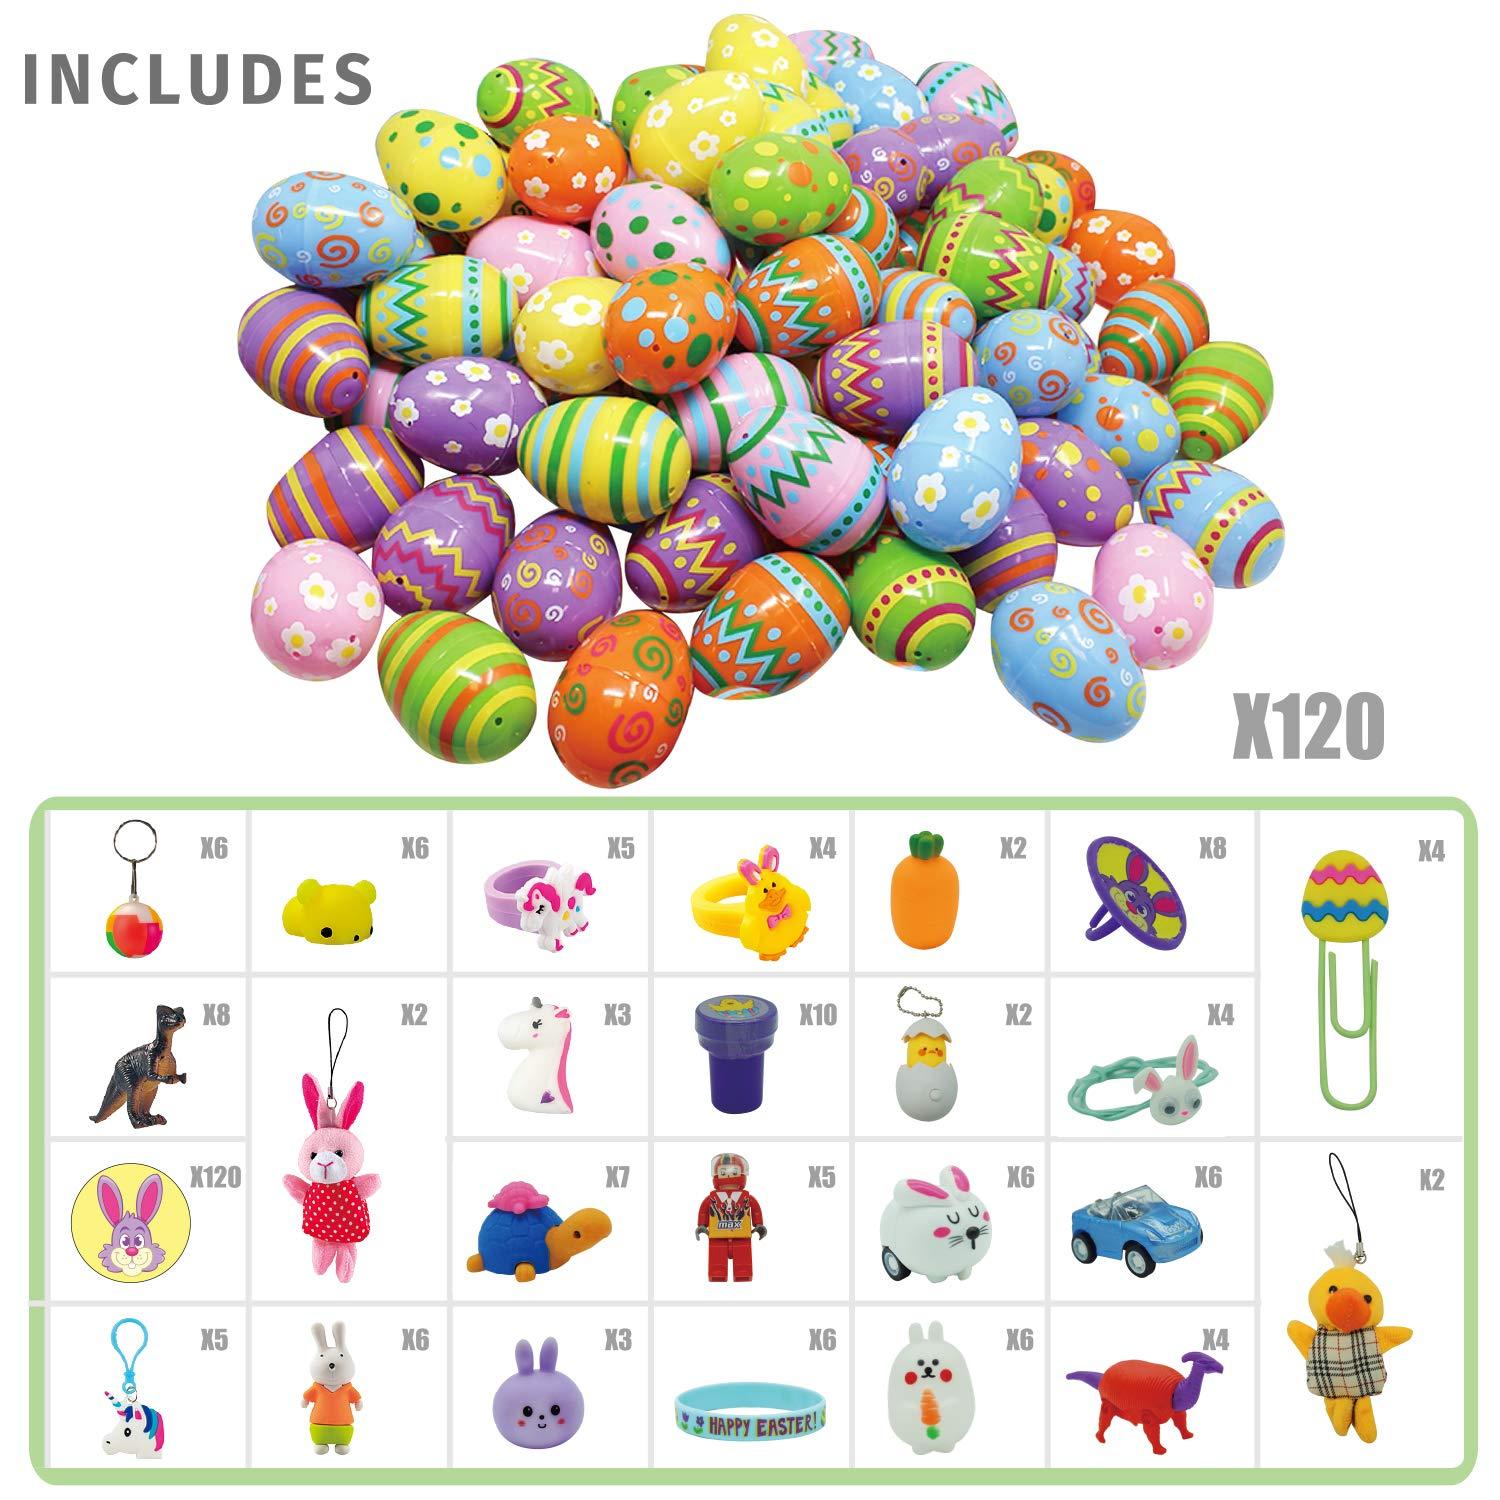 120 Pcs Prefilled Premium Printed Easter Eggs